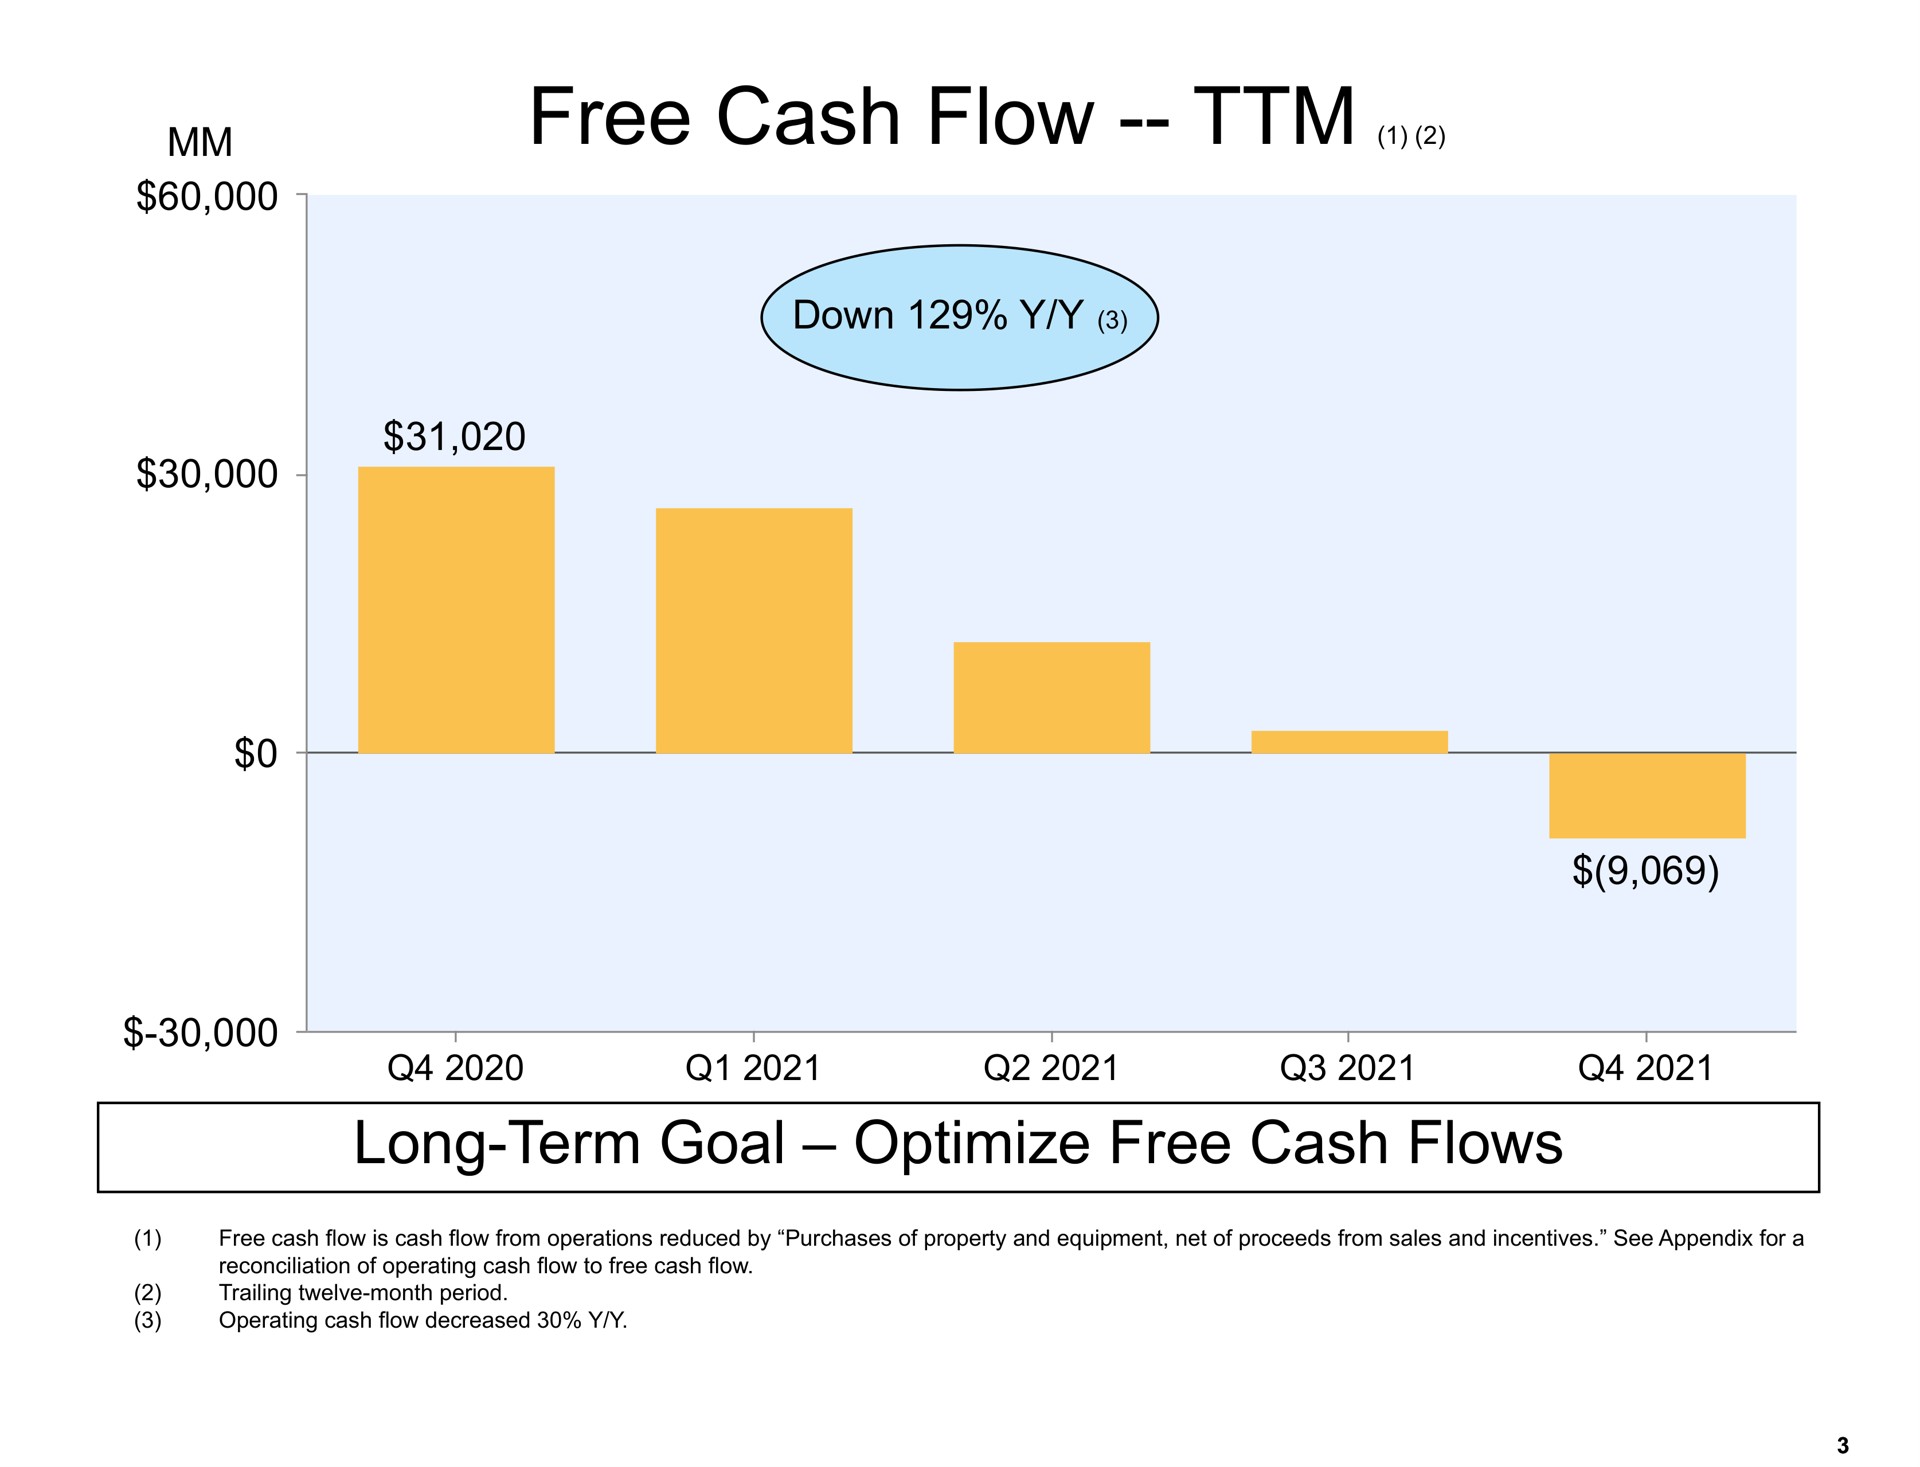 free cash flow long term goal optimize free cash flows down a | Amazon